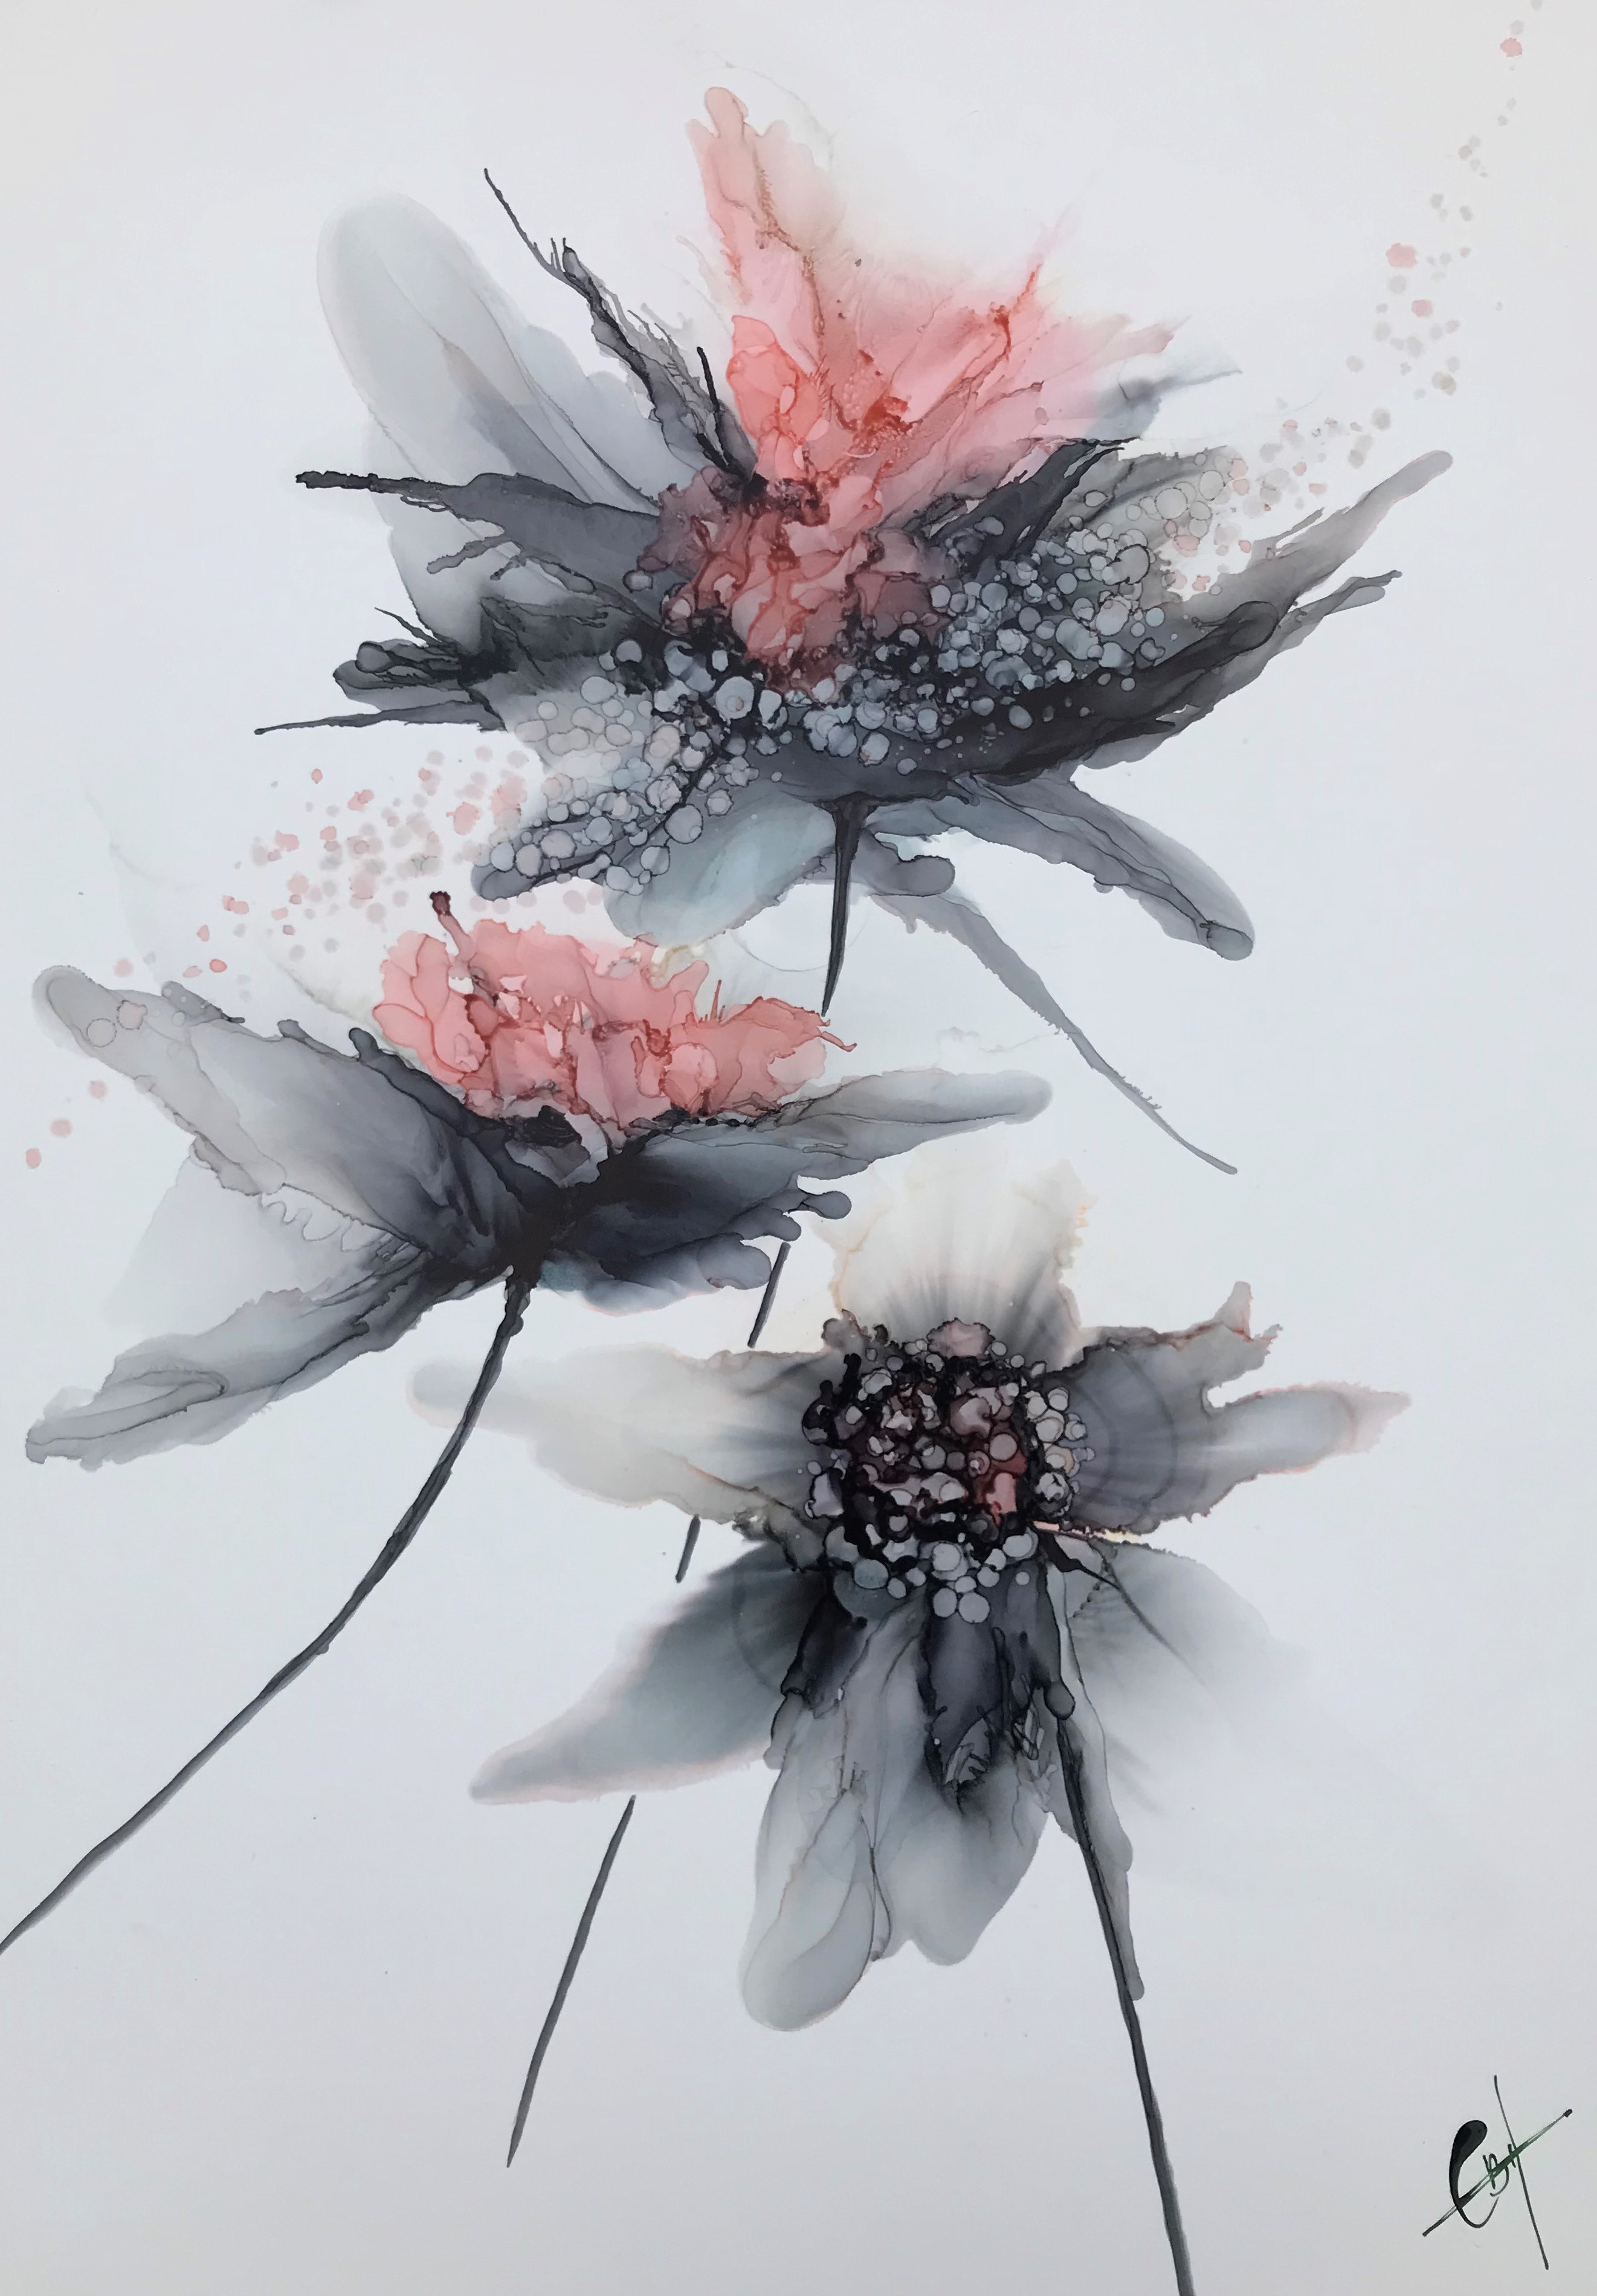 charlotte bøgh aagaard - Flowers in Ink 8